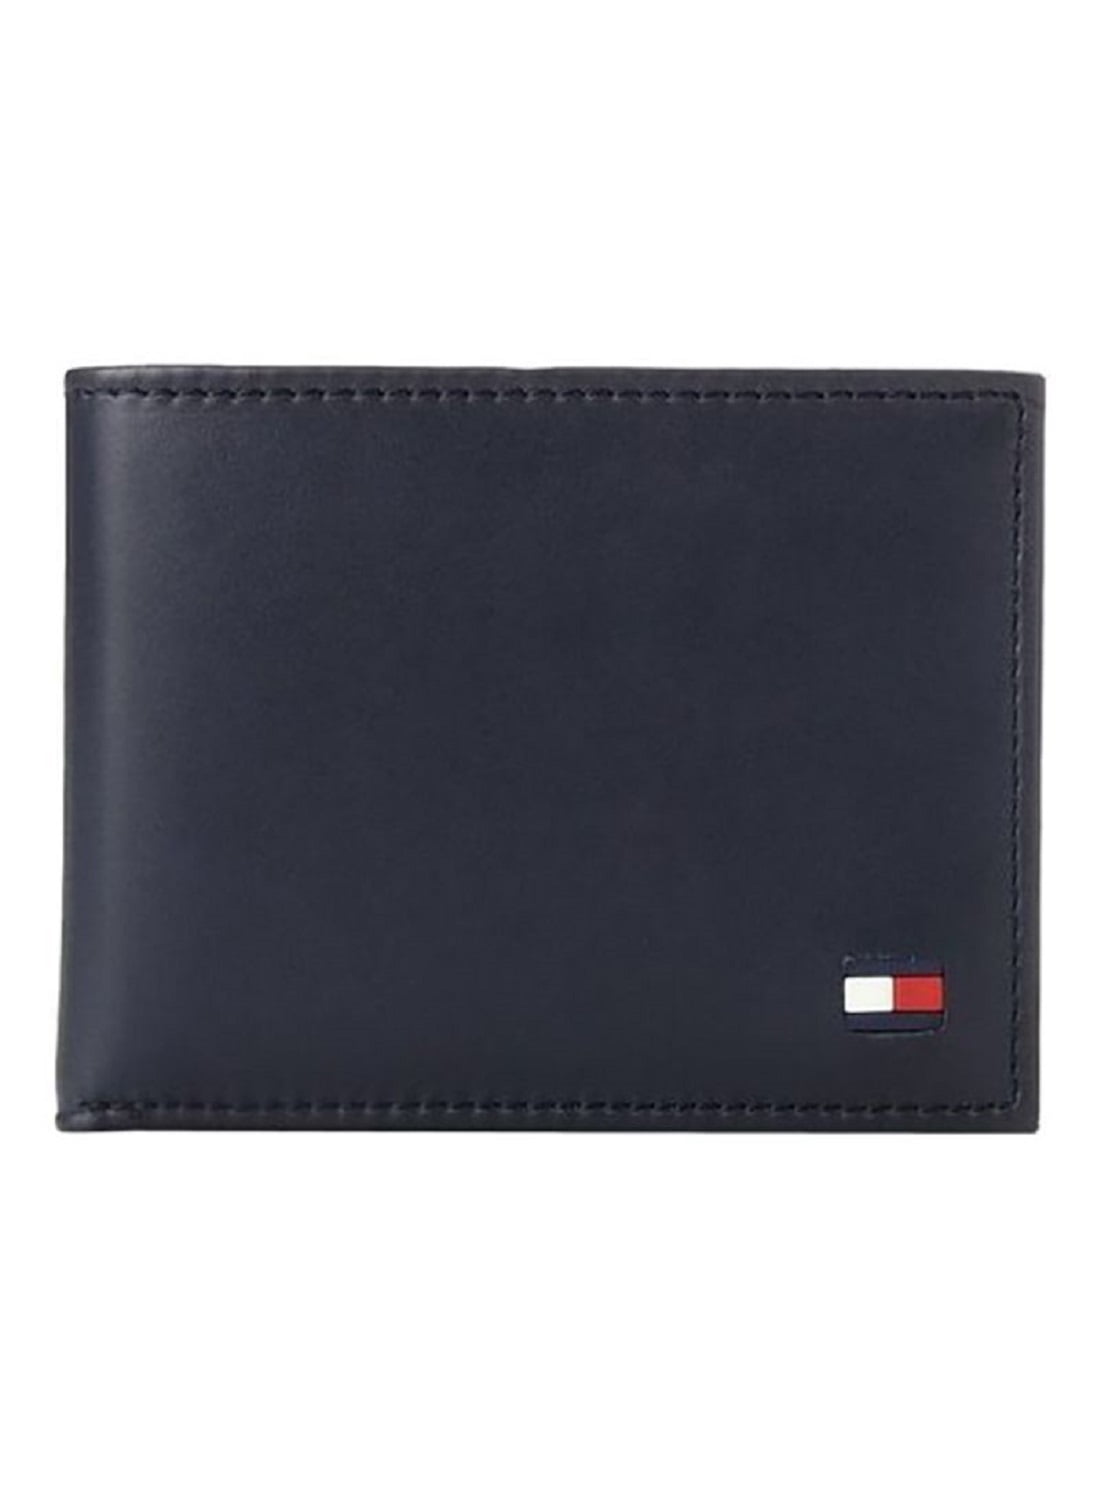 Tommy Hilfiger Men's Leather Credit Card Wallet Bifold Black 31TL22X046